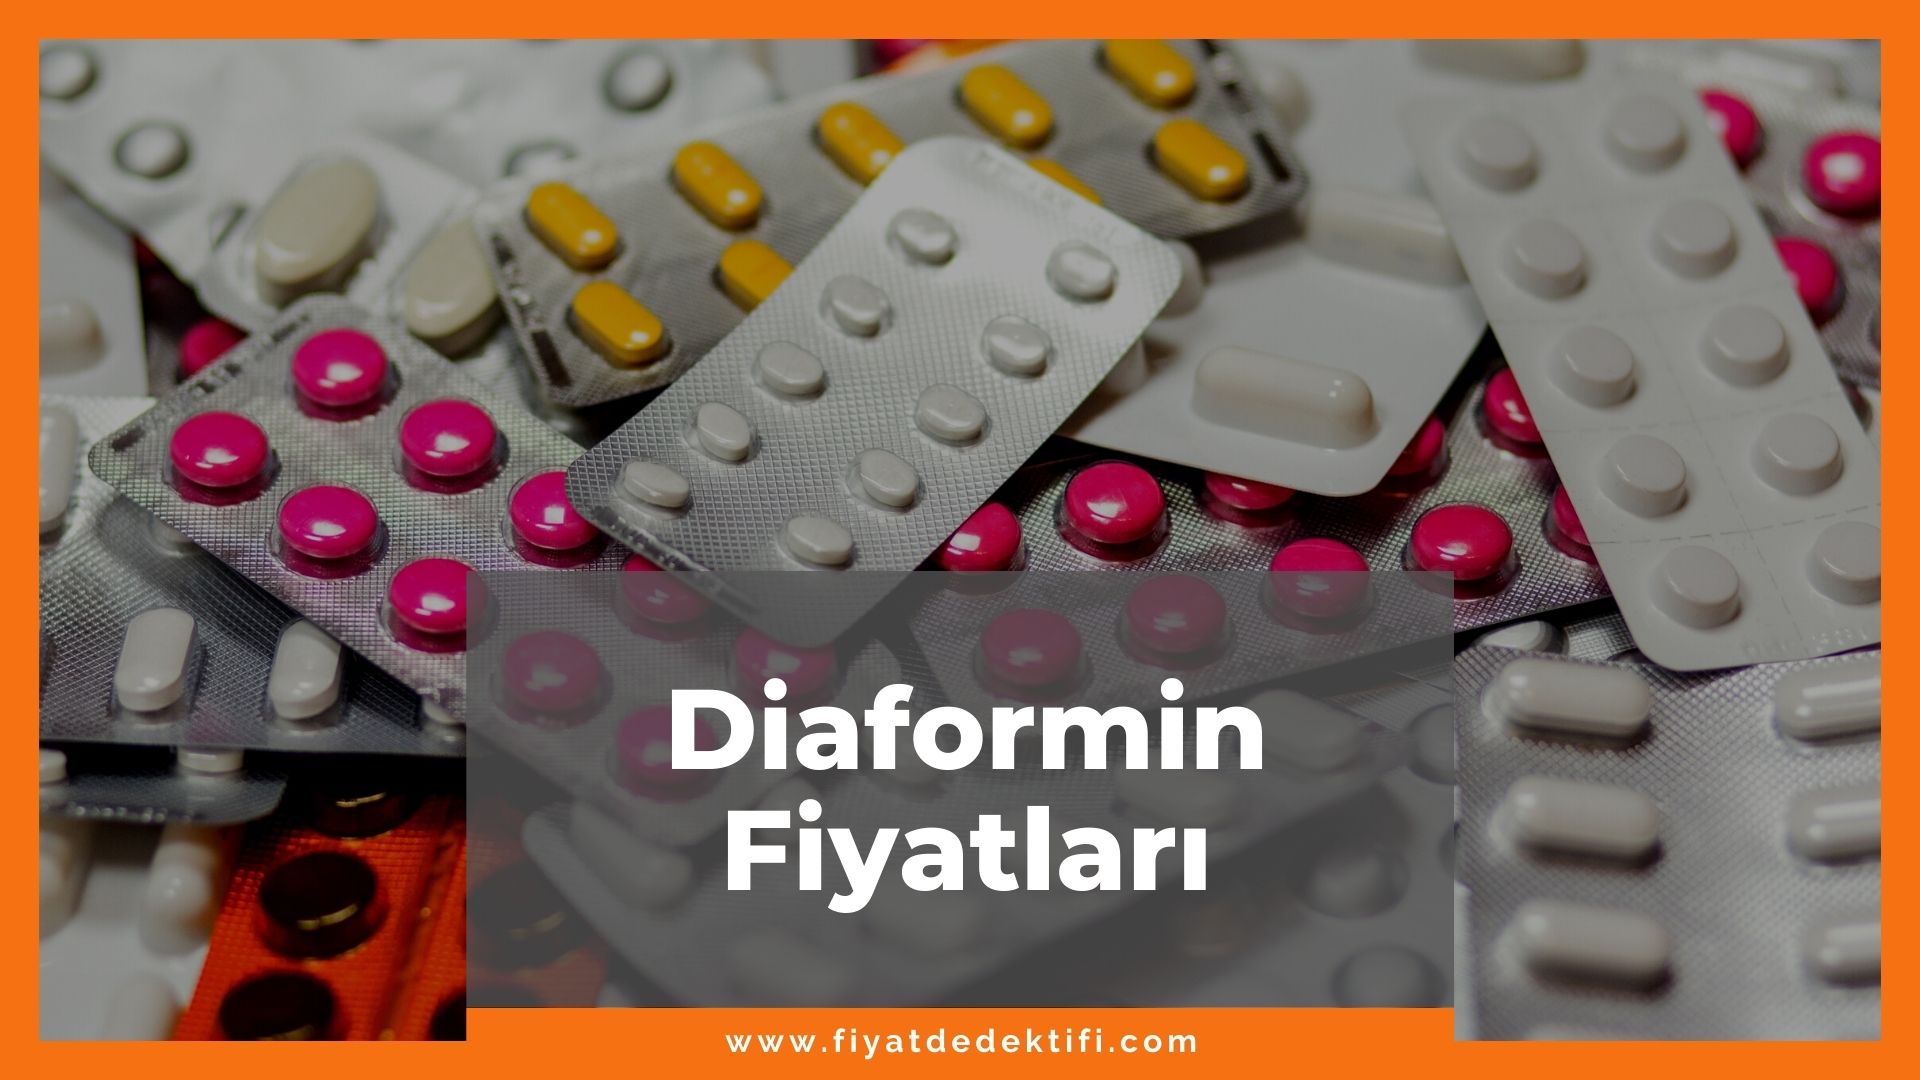 Diaformin Fiyat 2021, Diaformin Fiyatı, Diaformin 1000 mg Fiyatı, diaformin zamlandı mı, diaformin zamlı fiyat ne kadar kaç tl